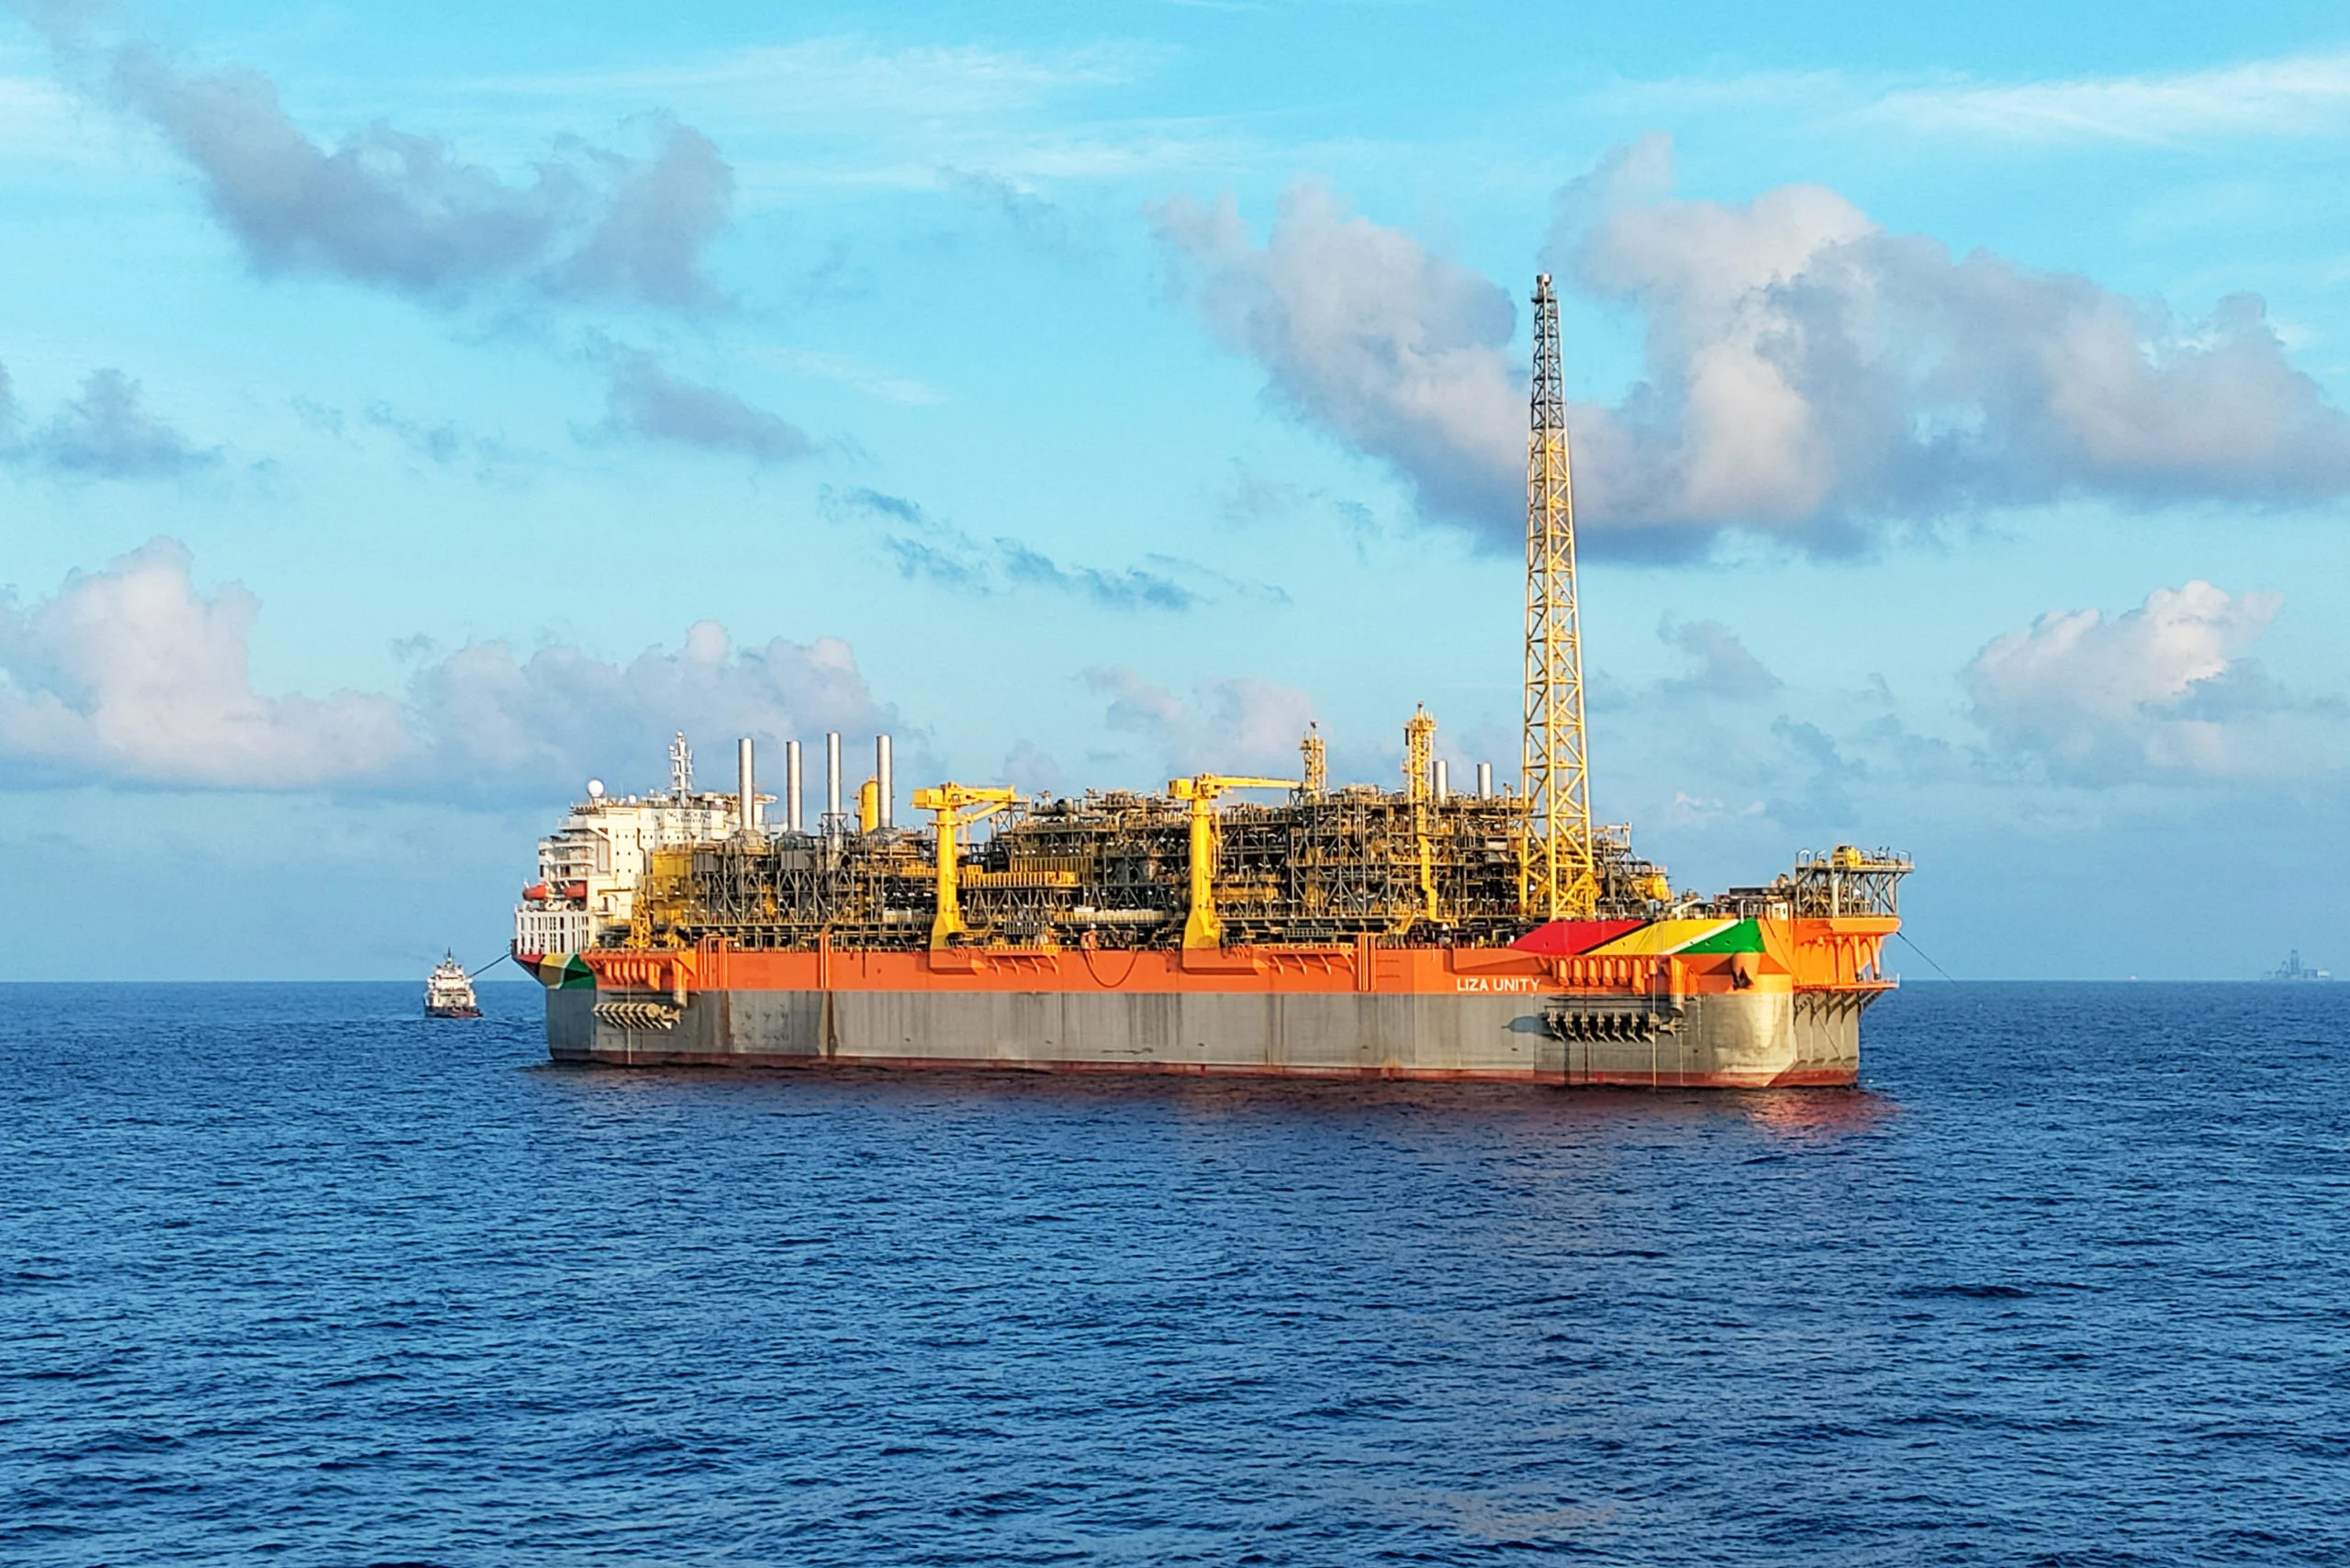 Guiana adia seu 1º leilão de O&G. Na imagem: FPSO Liza Unity, em operação no offshore da Guiana, navega em mar azul (Foto: Divulgação SBM)